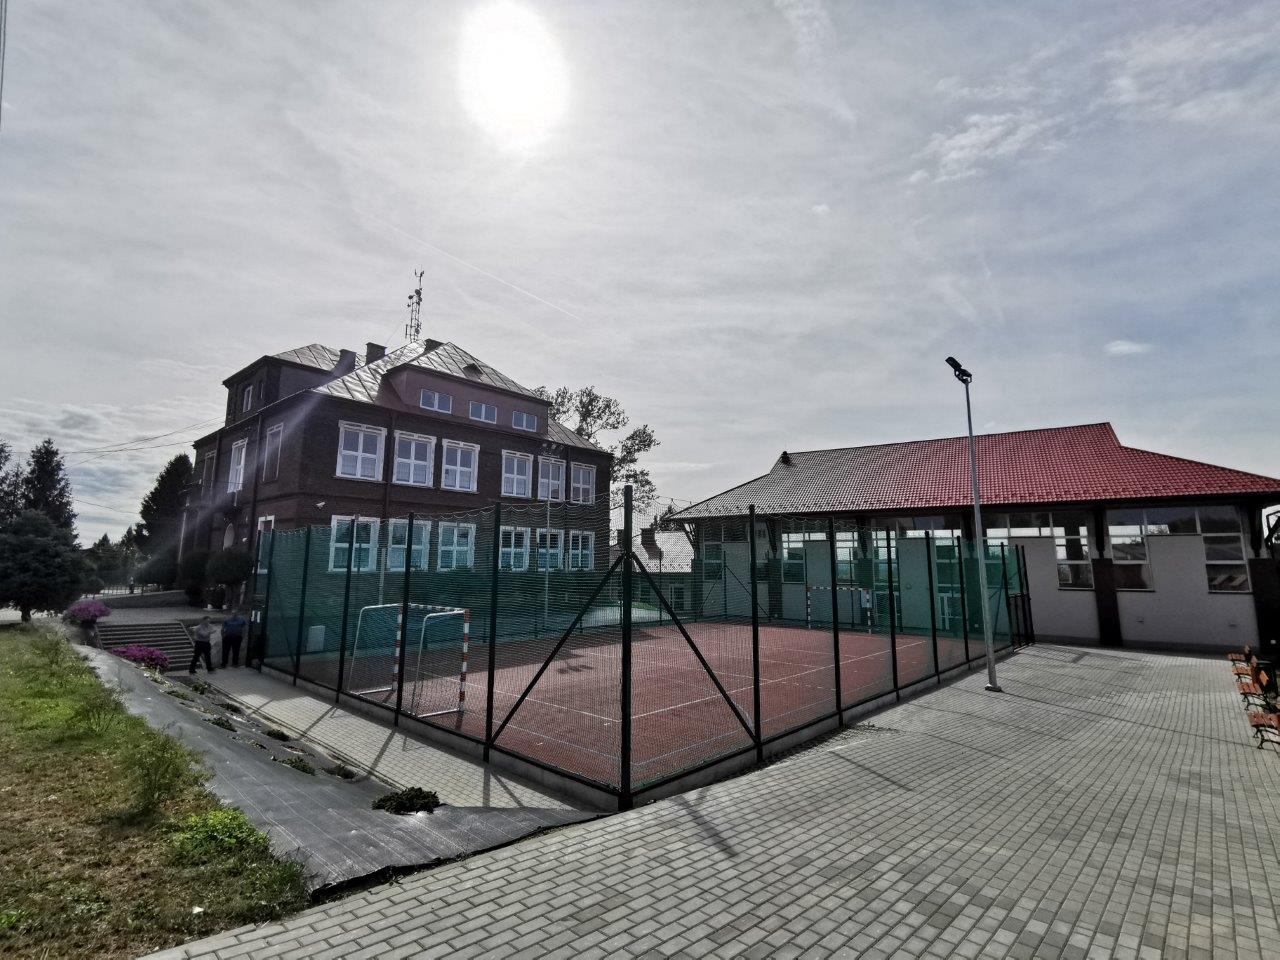 Za ogrodzonym boisko z nawierzchnią tartanową, budynek szkoły po lewej, a po prawej hala sportowa.